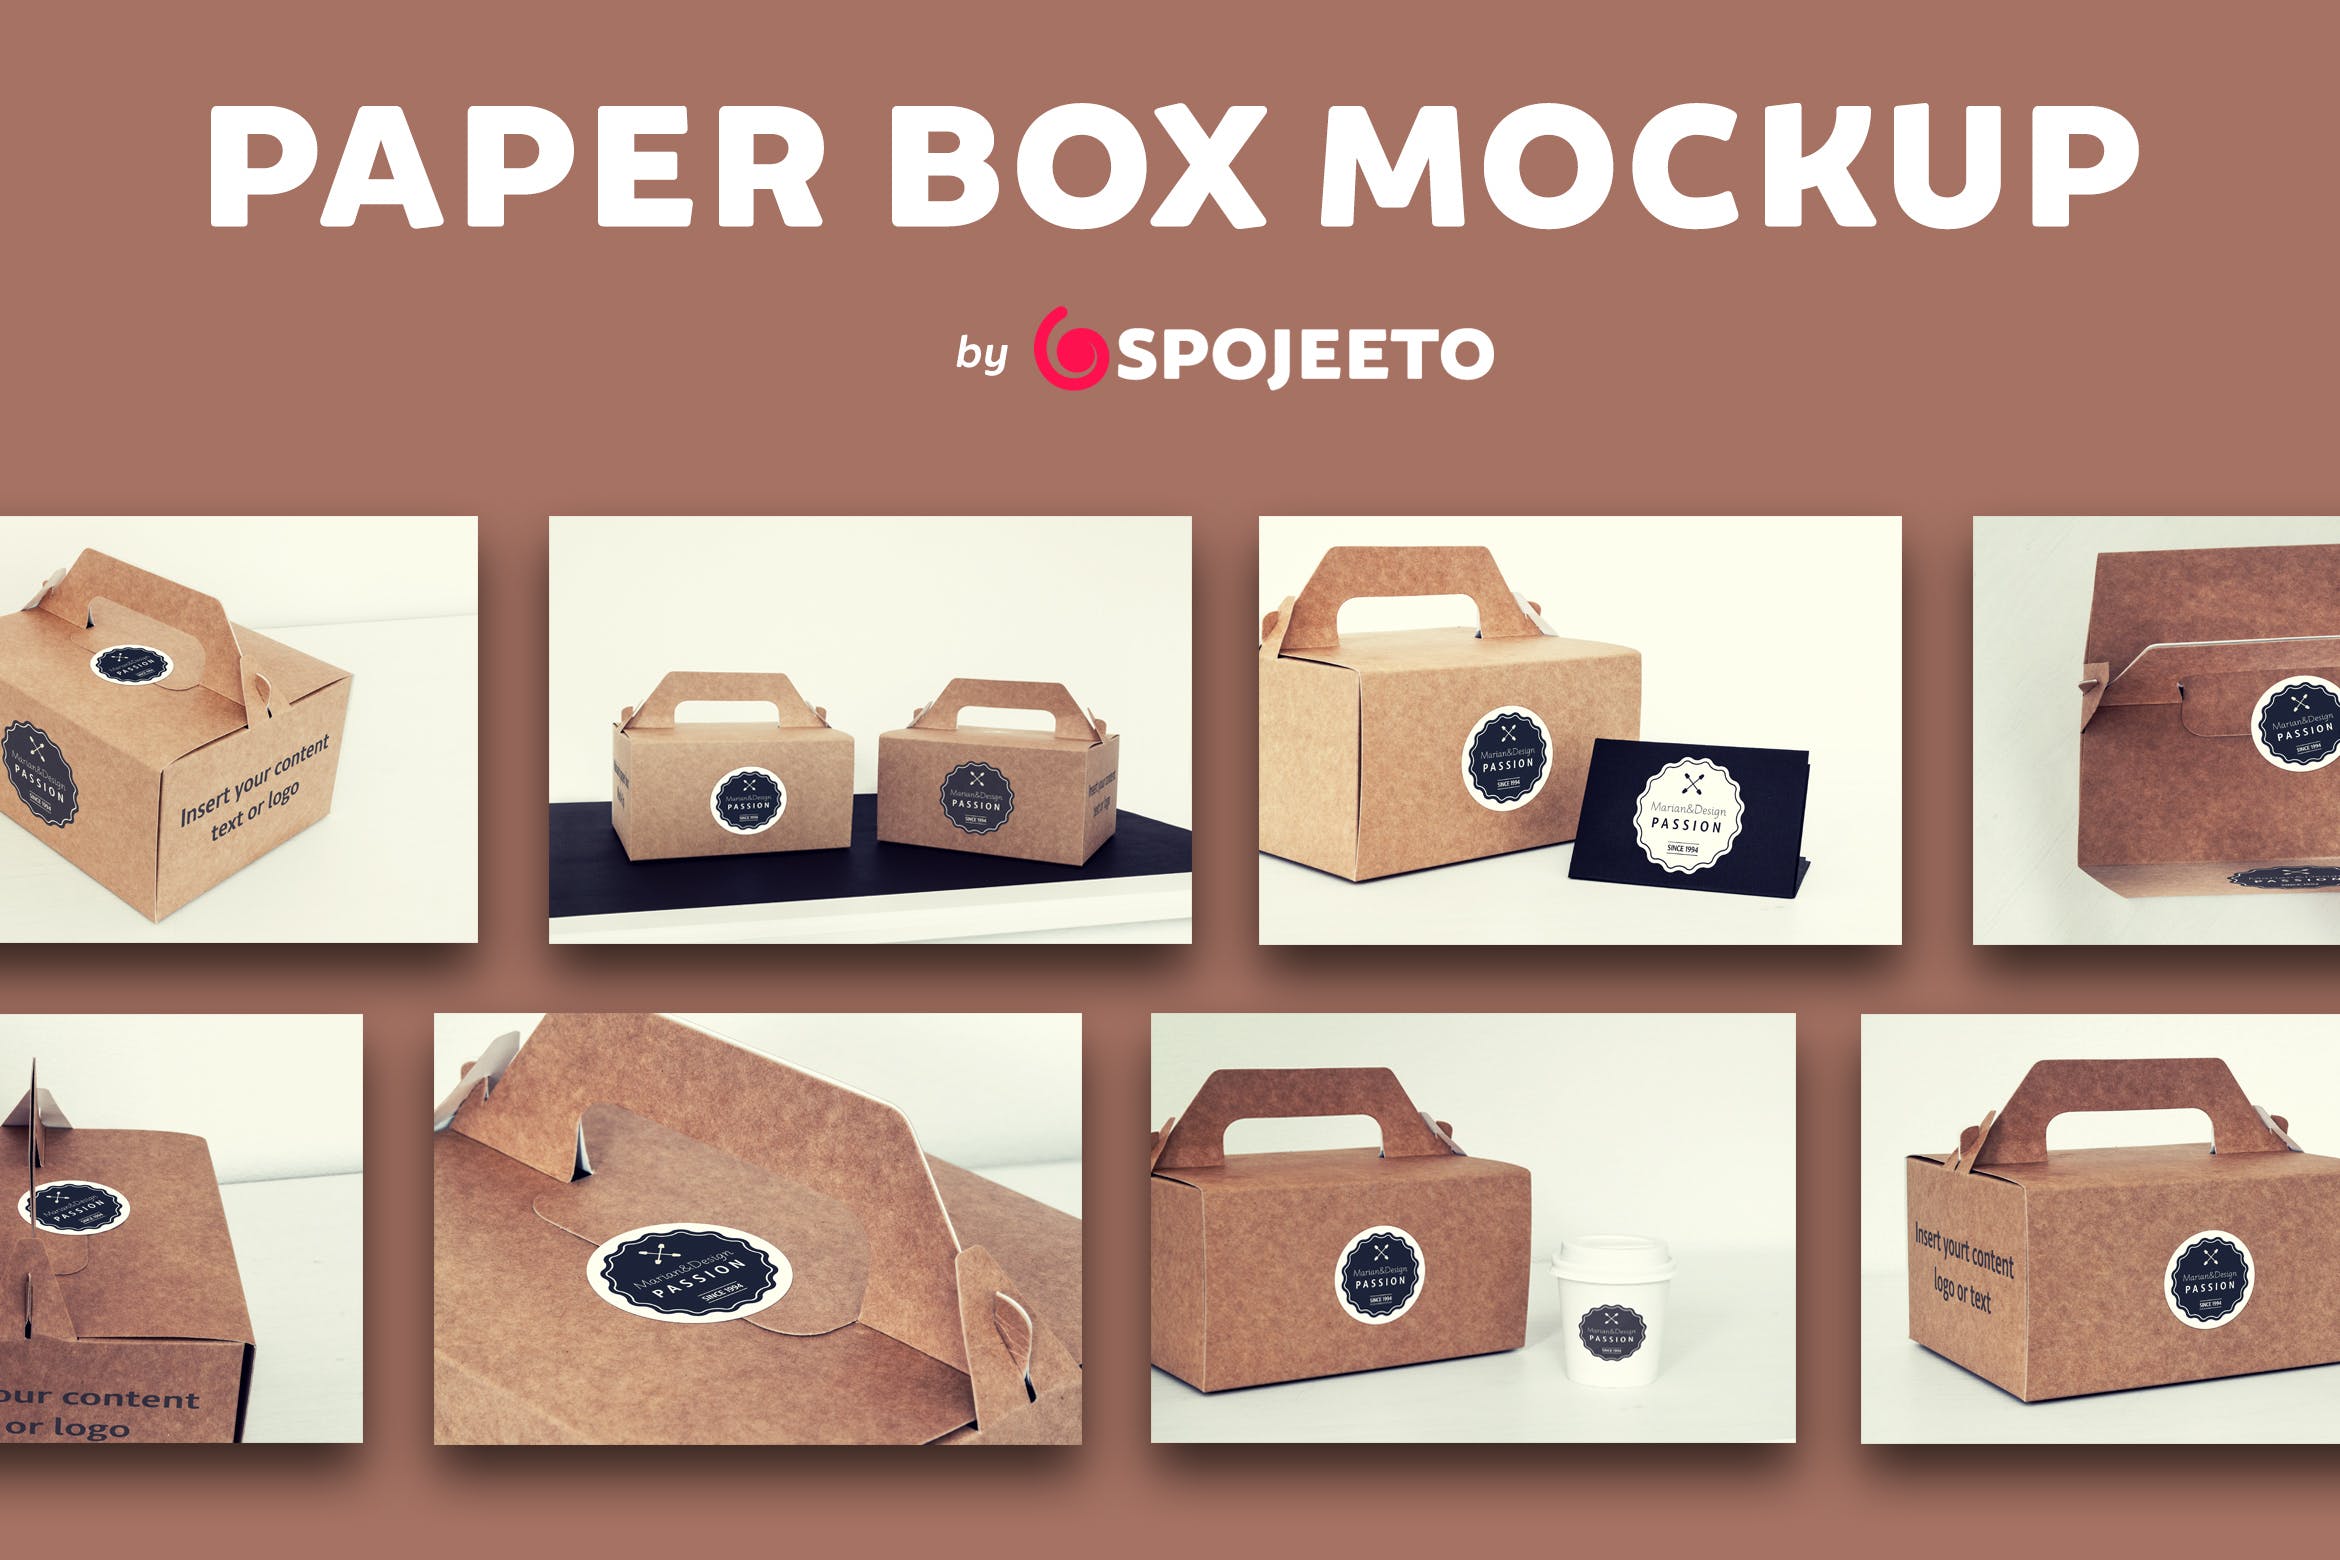 蛋糕外带盒包装&品牌Logo设计效果图第一素材精选模板 Photorealistic Paper Box & Logo Mock-Up插图